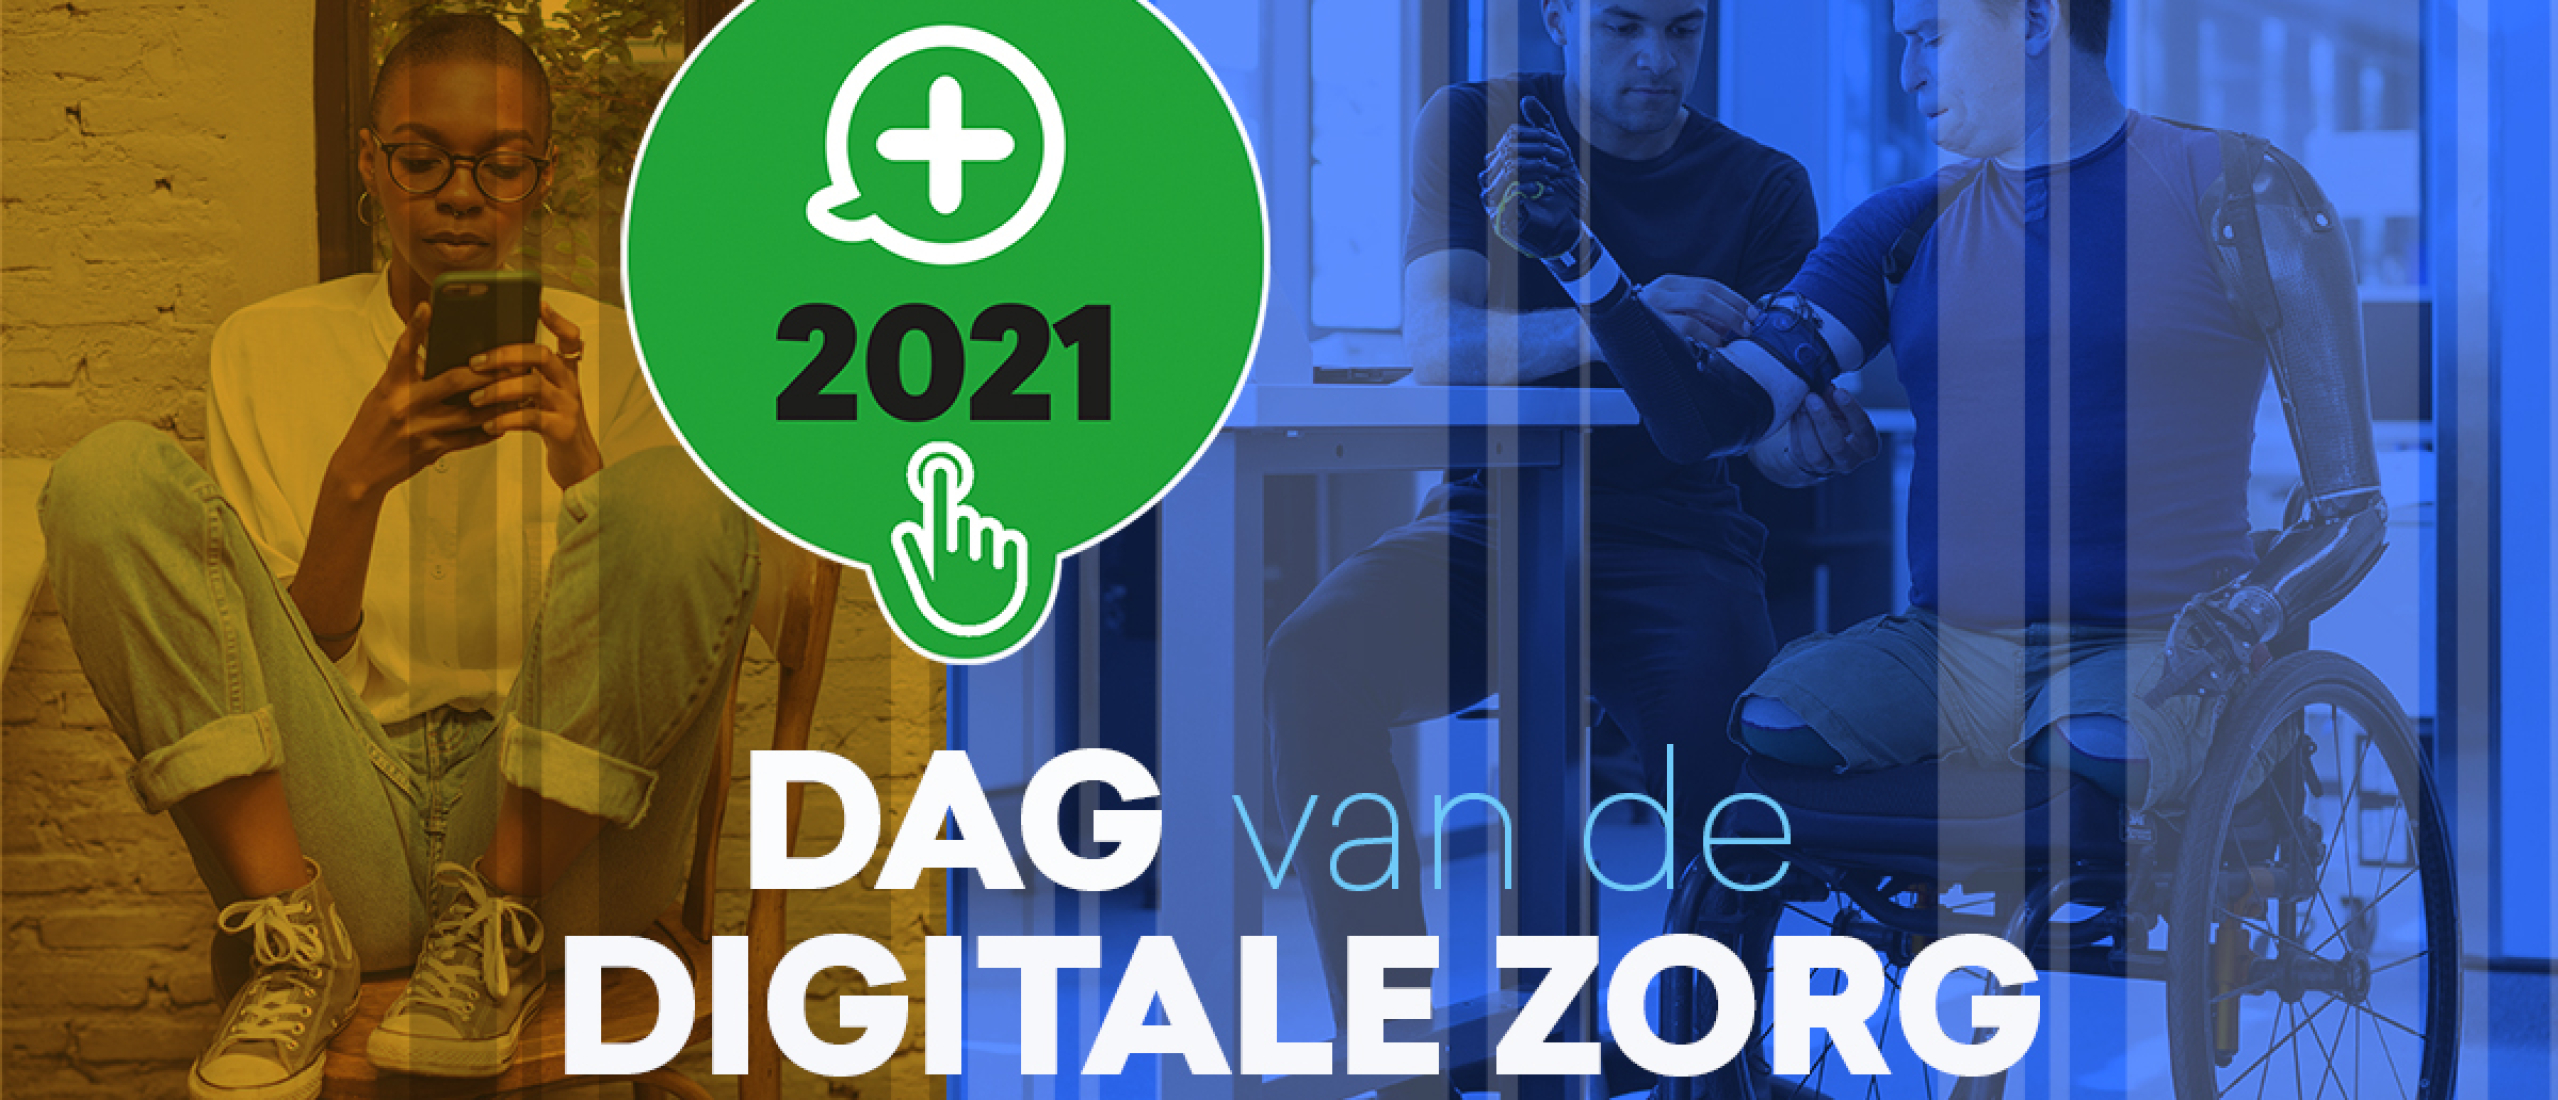 Dag van de Digitale Zorg 2021 – Op naar volgend jaar!